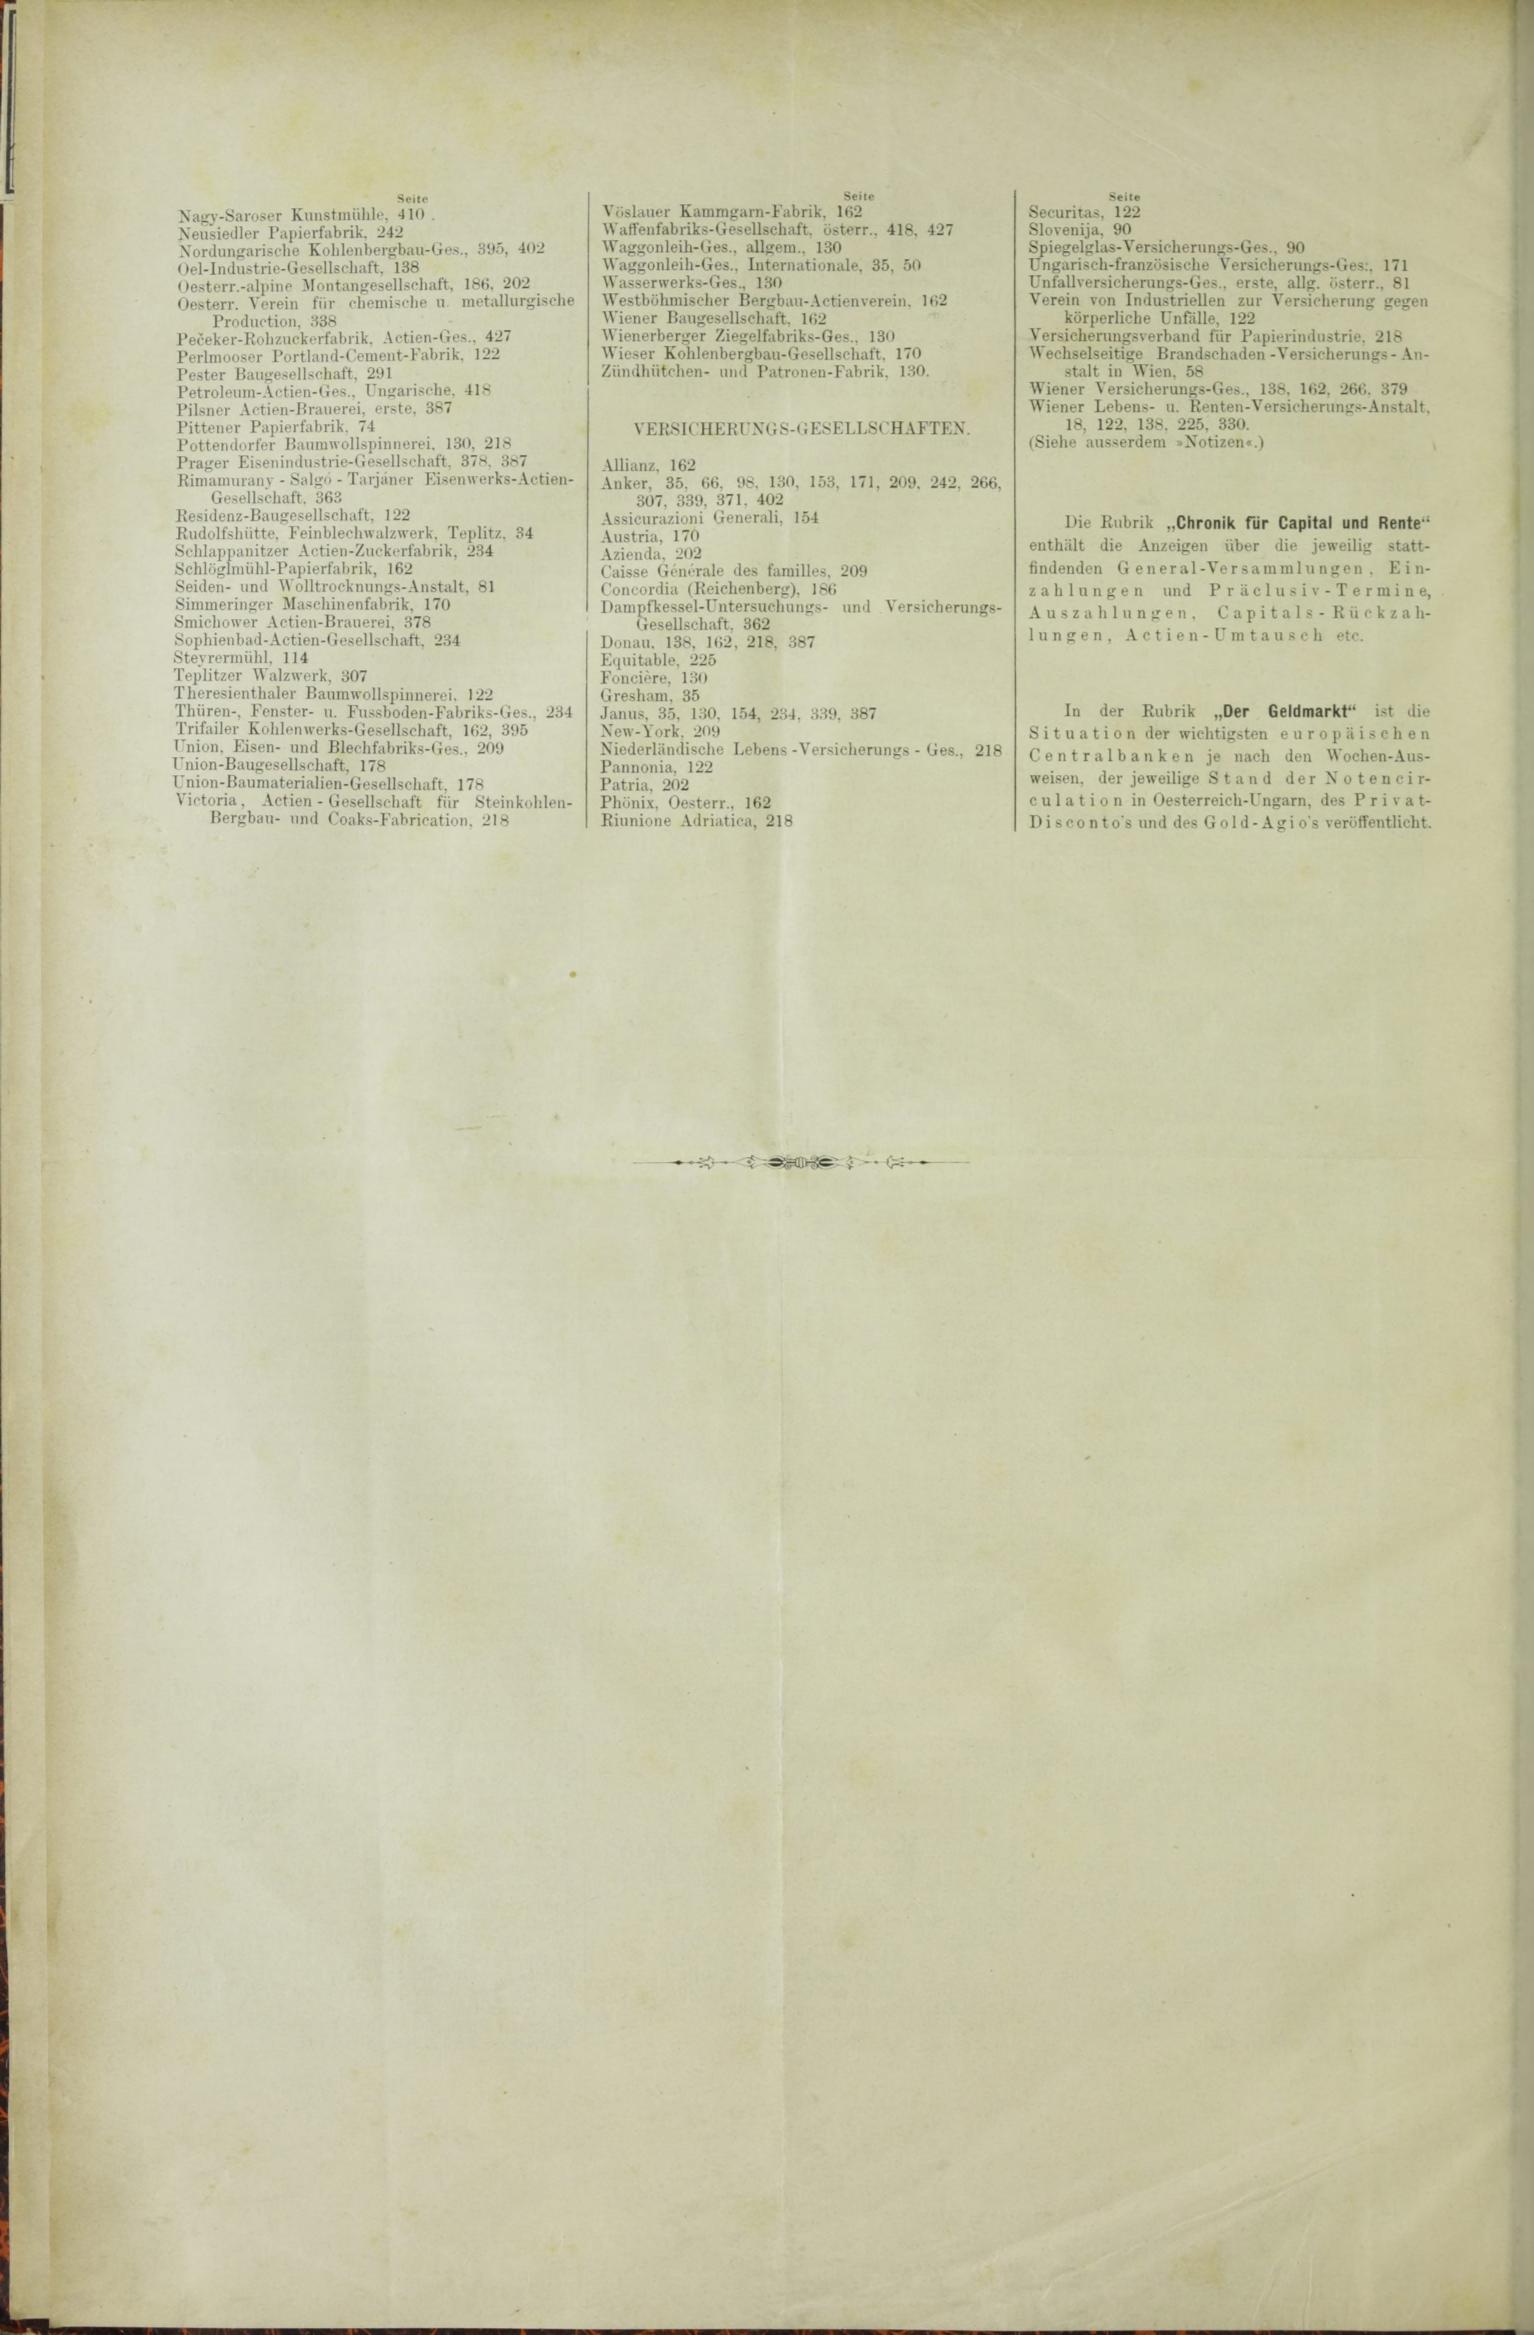 Der Tresor 26.03.1885 - Seite 12